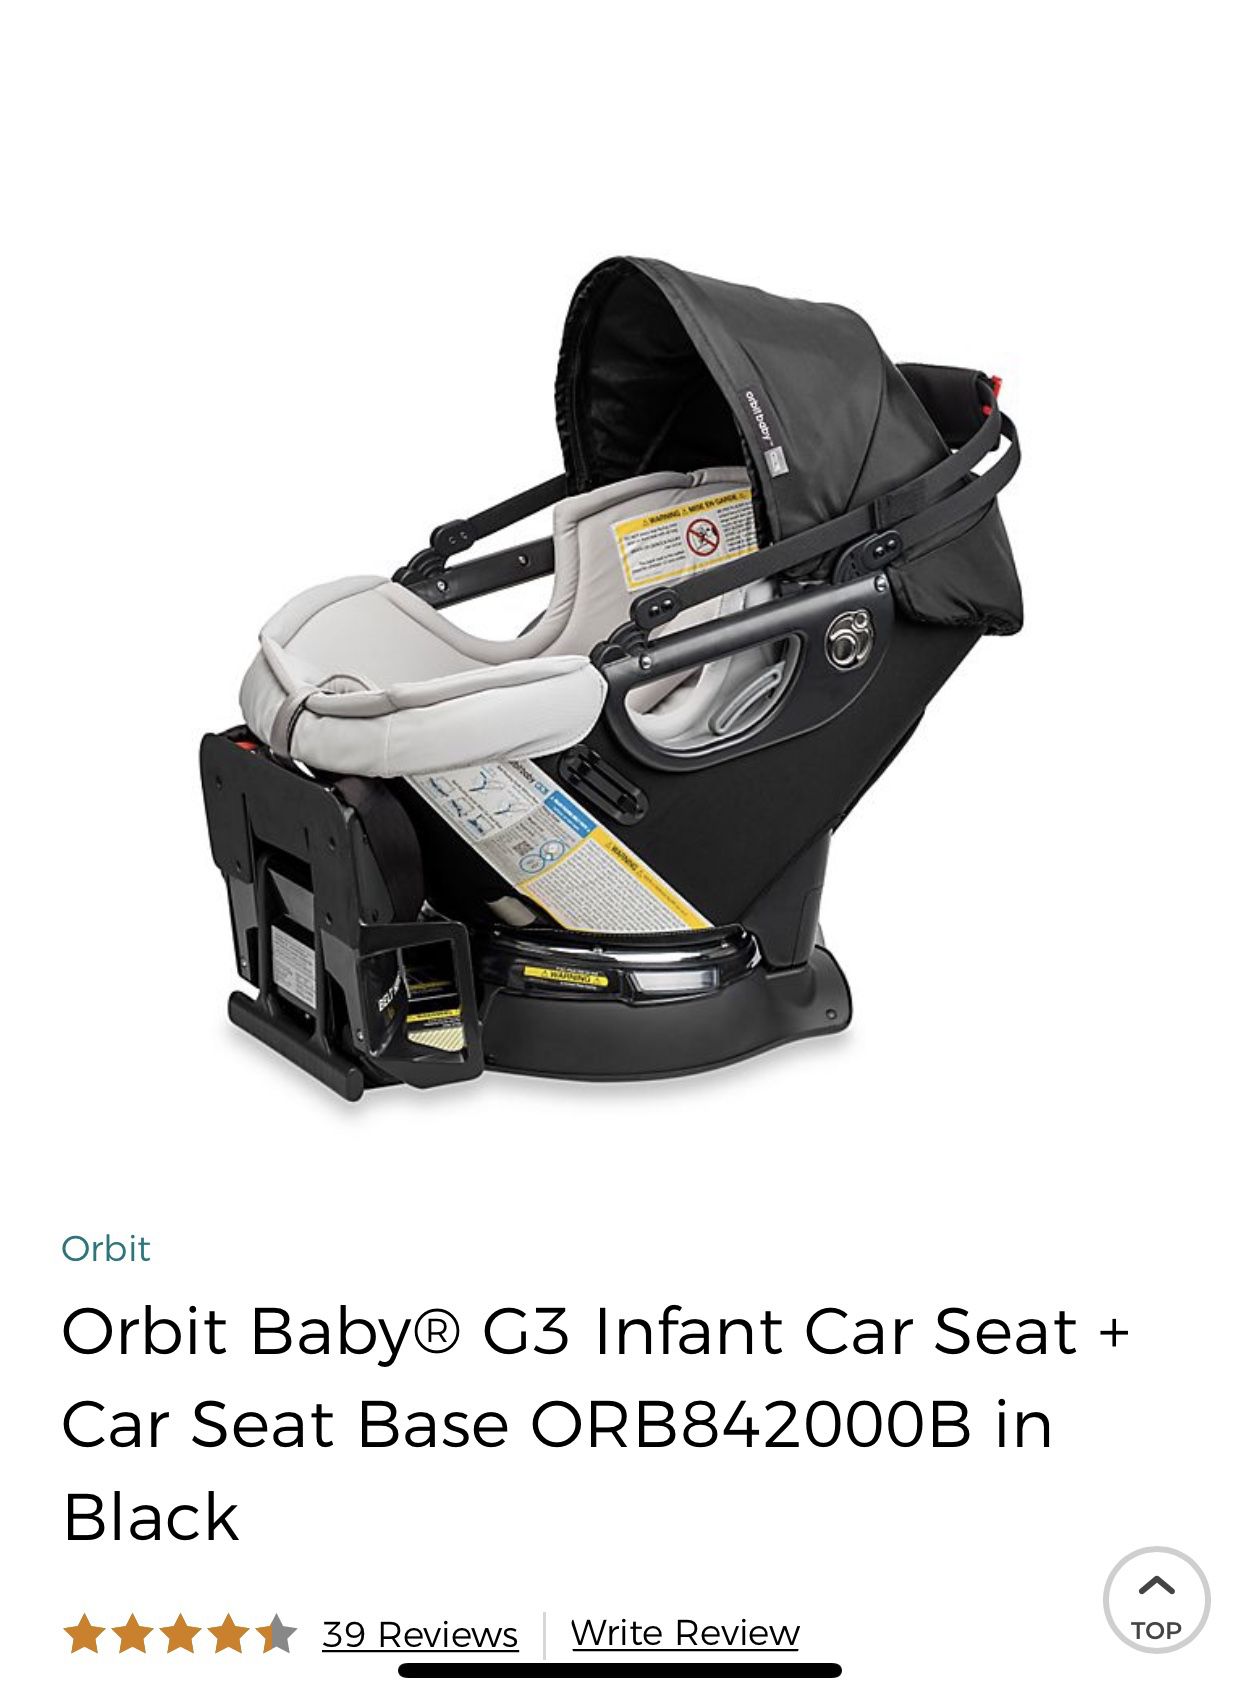 Orbit Infant Car Seat!!!